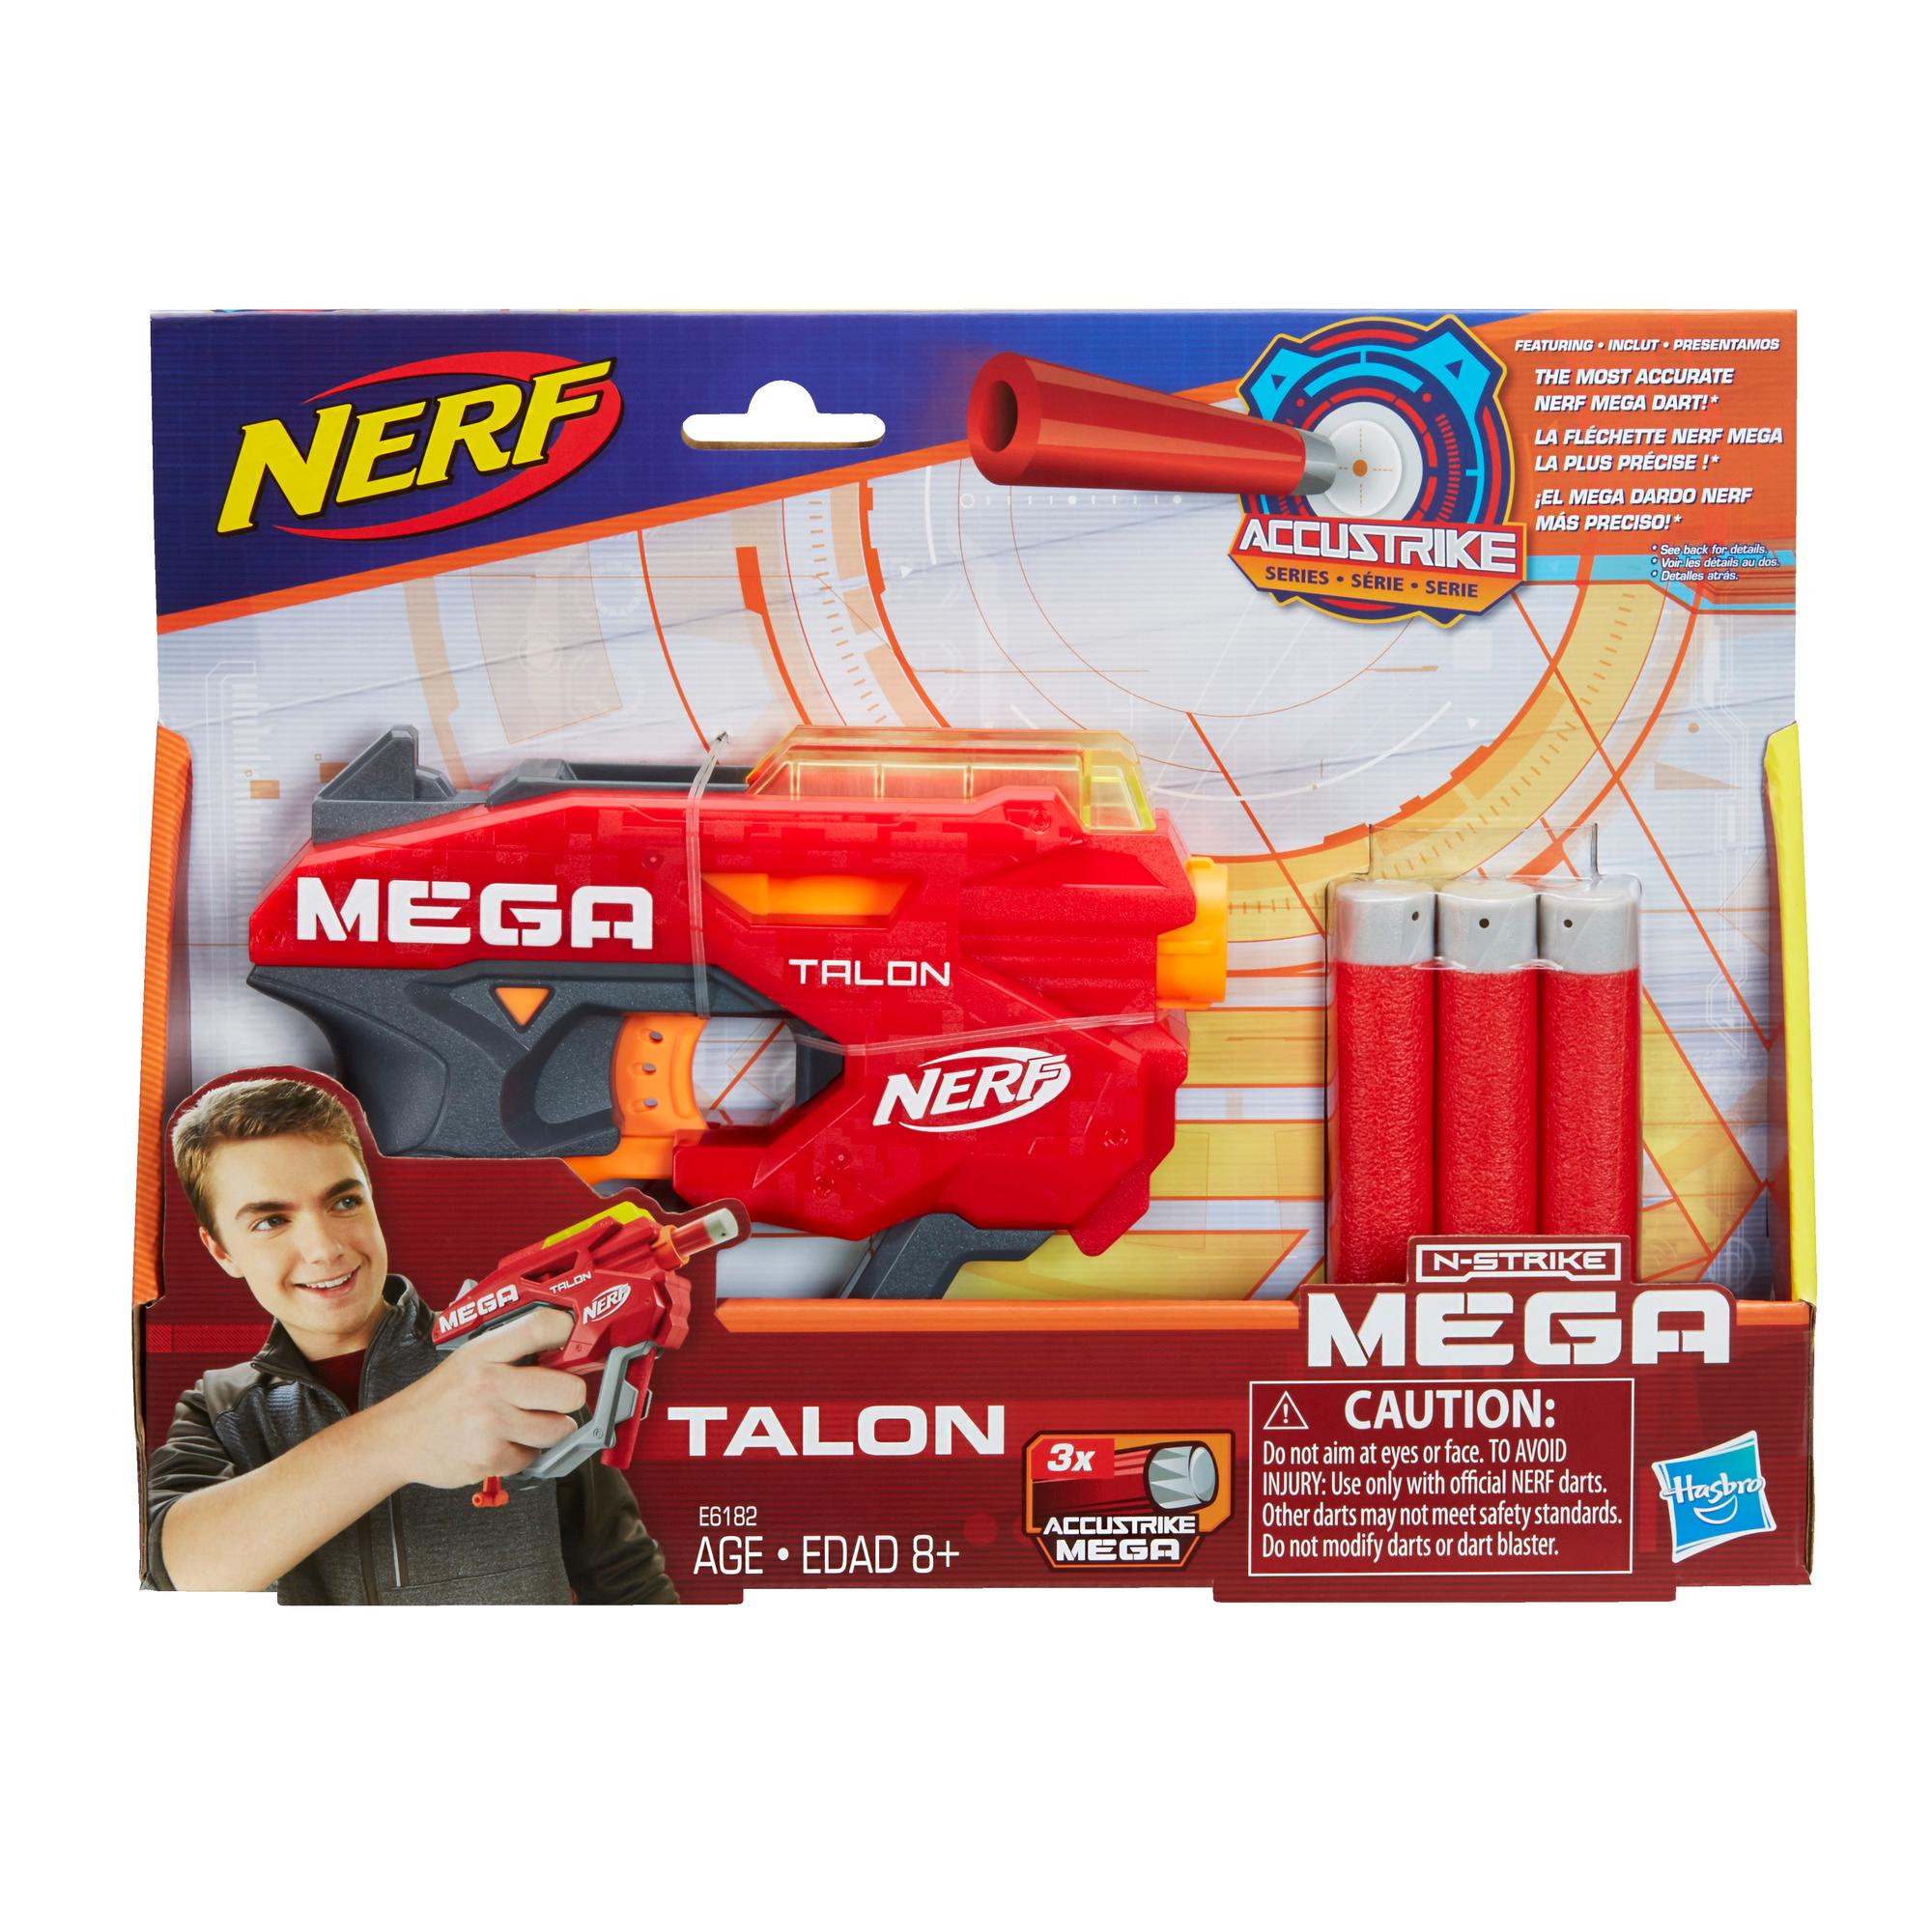 Blaster Nerf Mega Talon - Inclut 3 fléchettes Nerf Mega AccuStrike officielles, pour enfants, ados et adultes